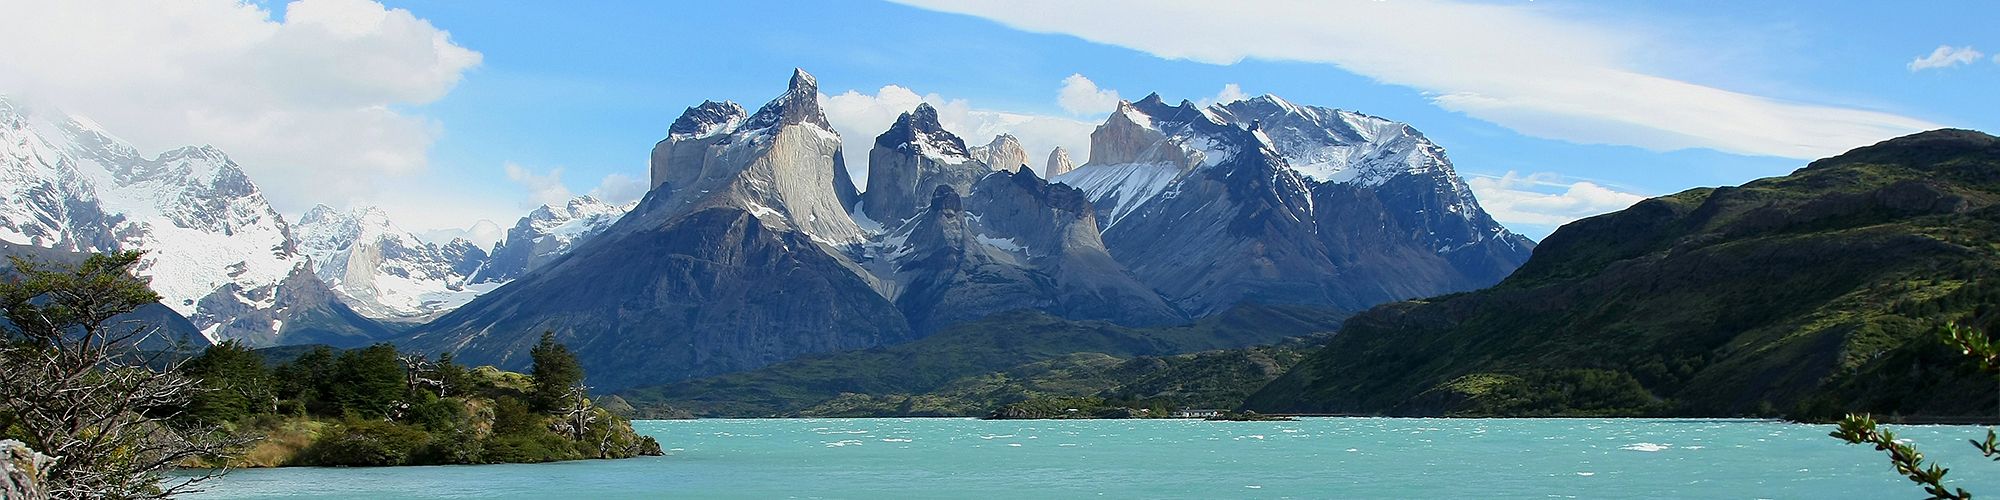 Voyage dans la Terre de Feu chilienne © Turavion